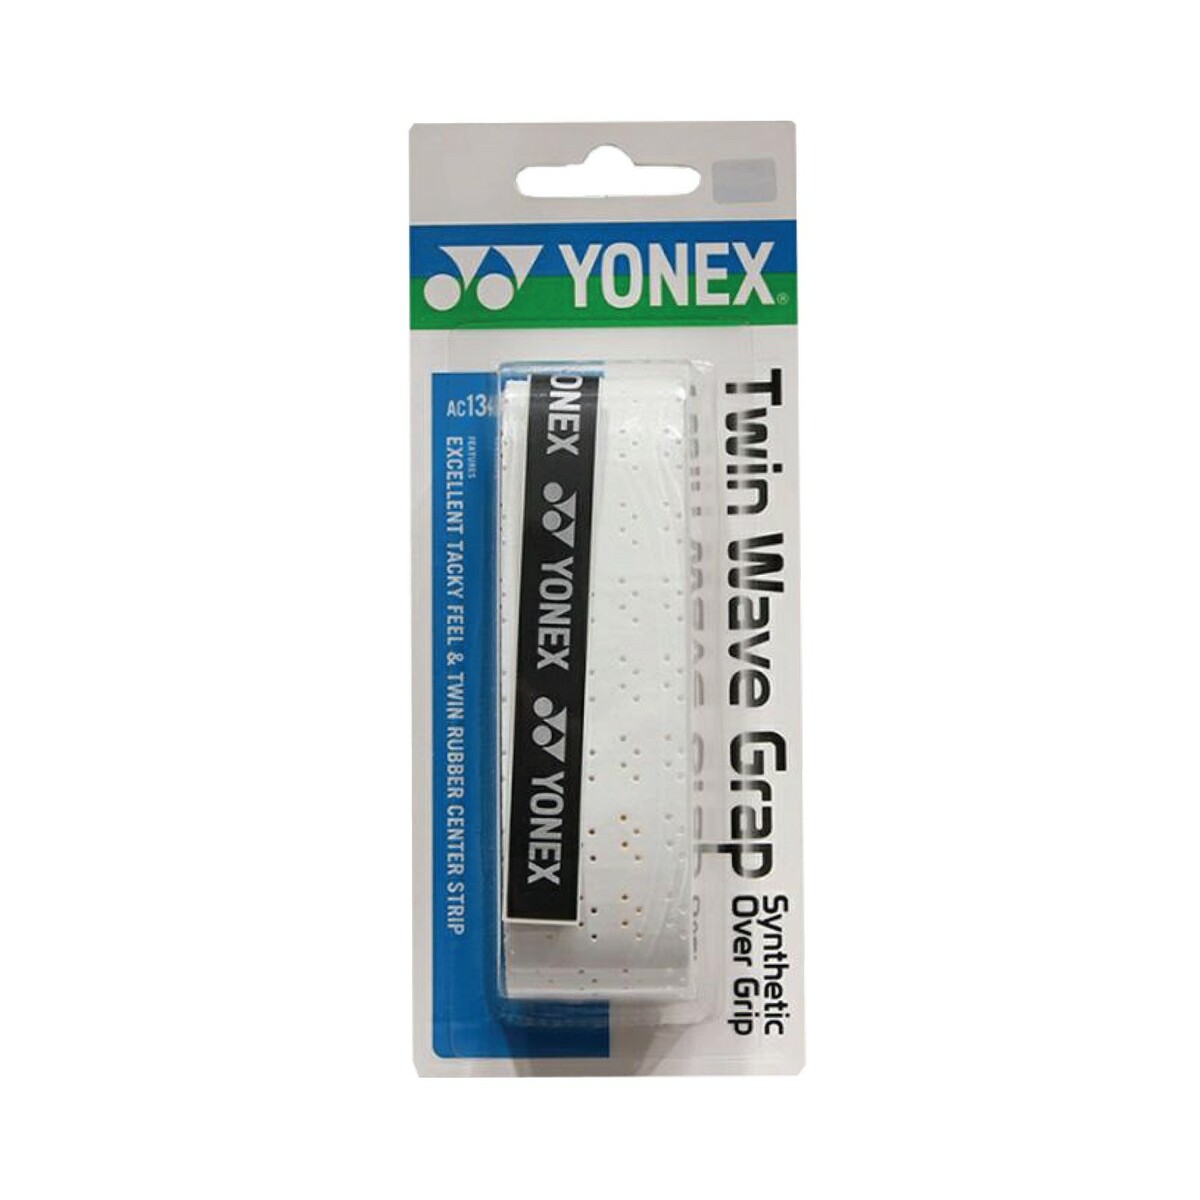 Yonex Water Fit Grip AC134EX Putih